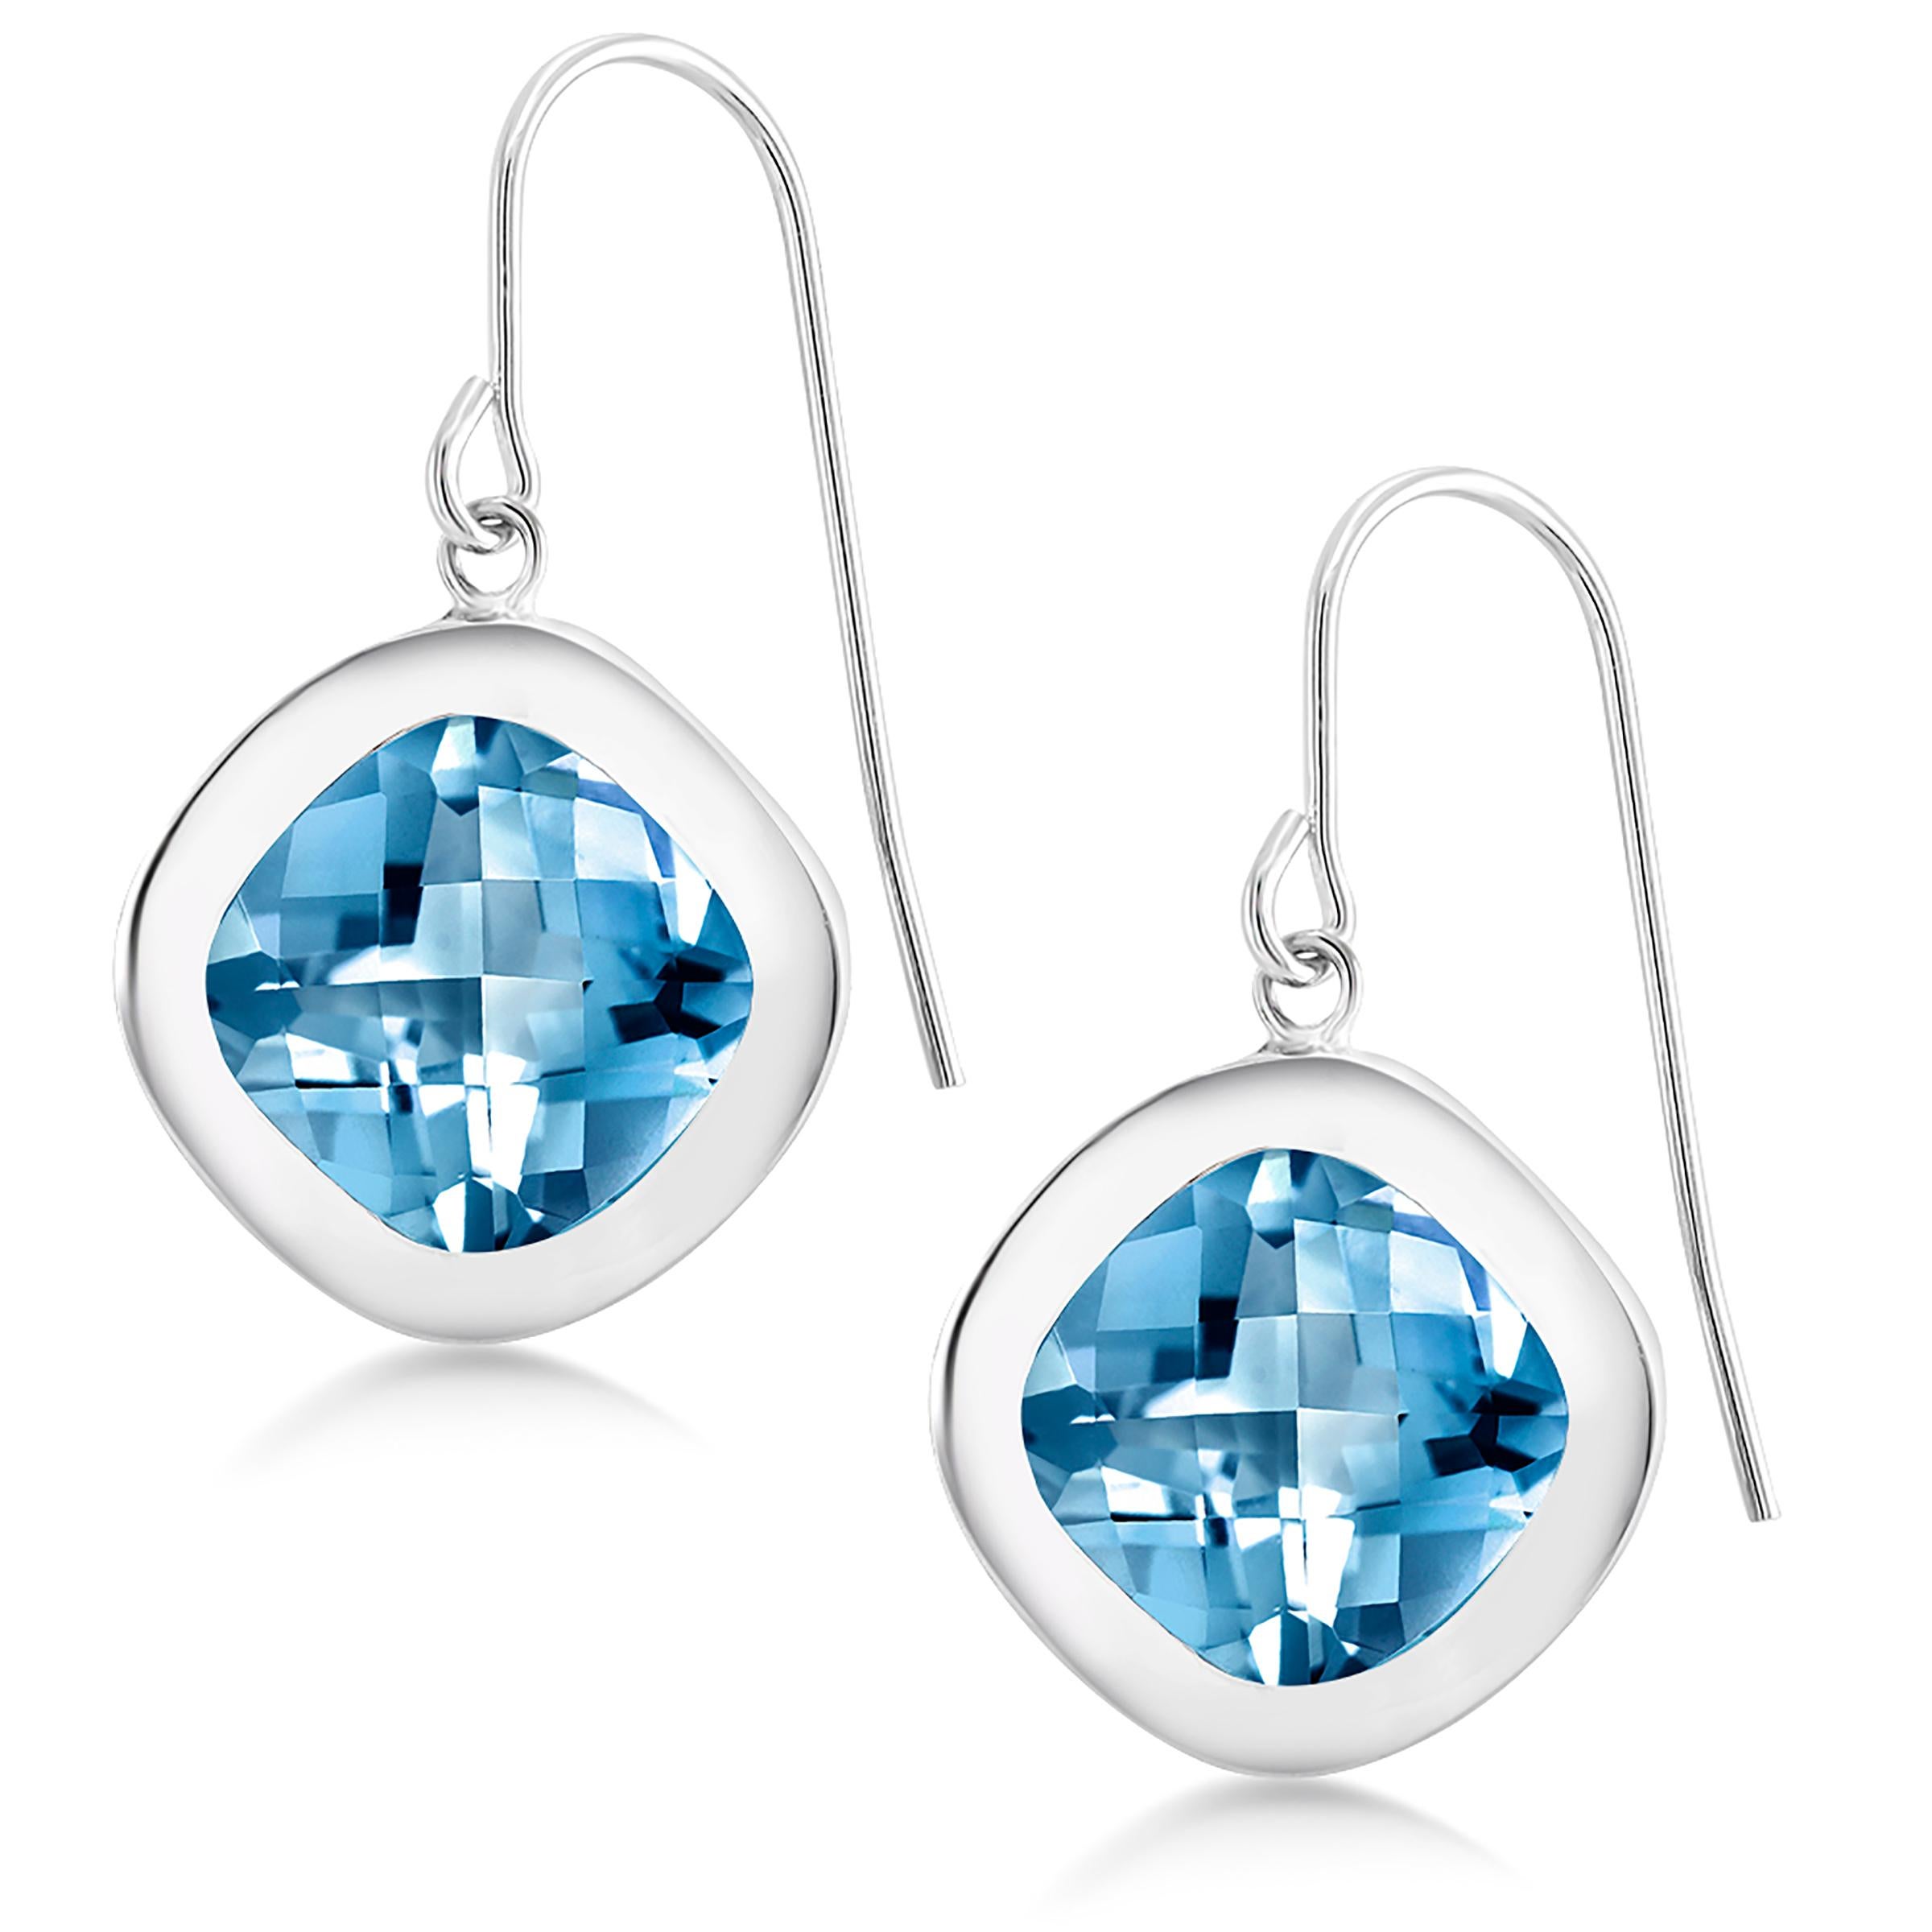 Sterling Silver Hoop Drop earrings
Pair cushion shape blue topaz weighing 10 carat
Measuring 0.60